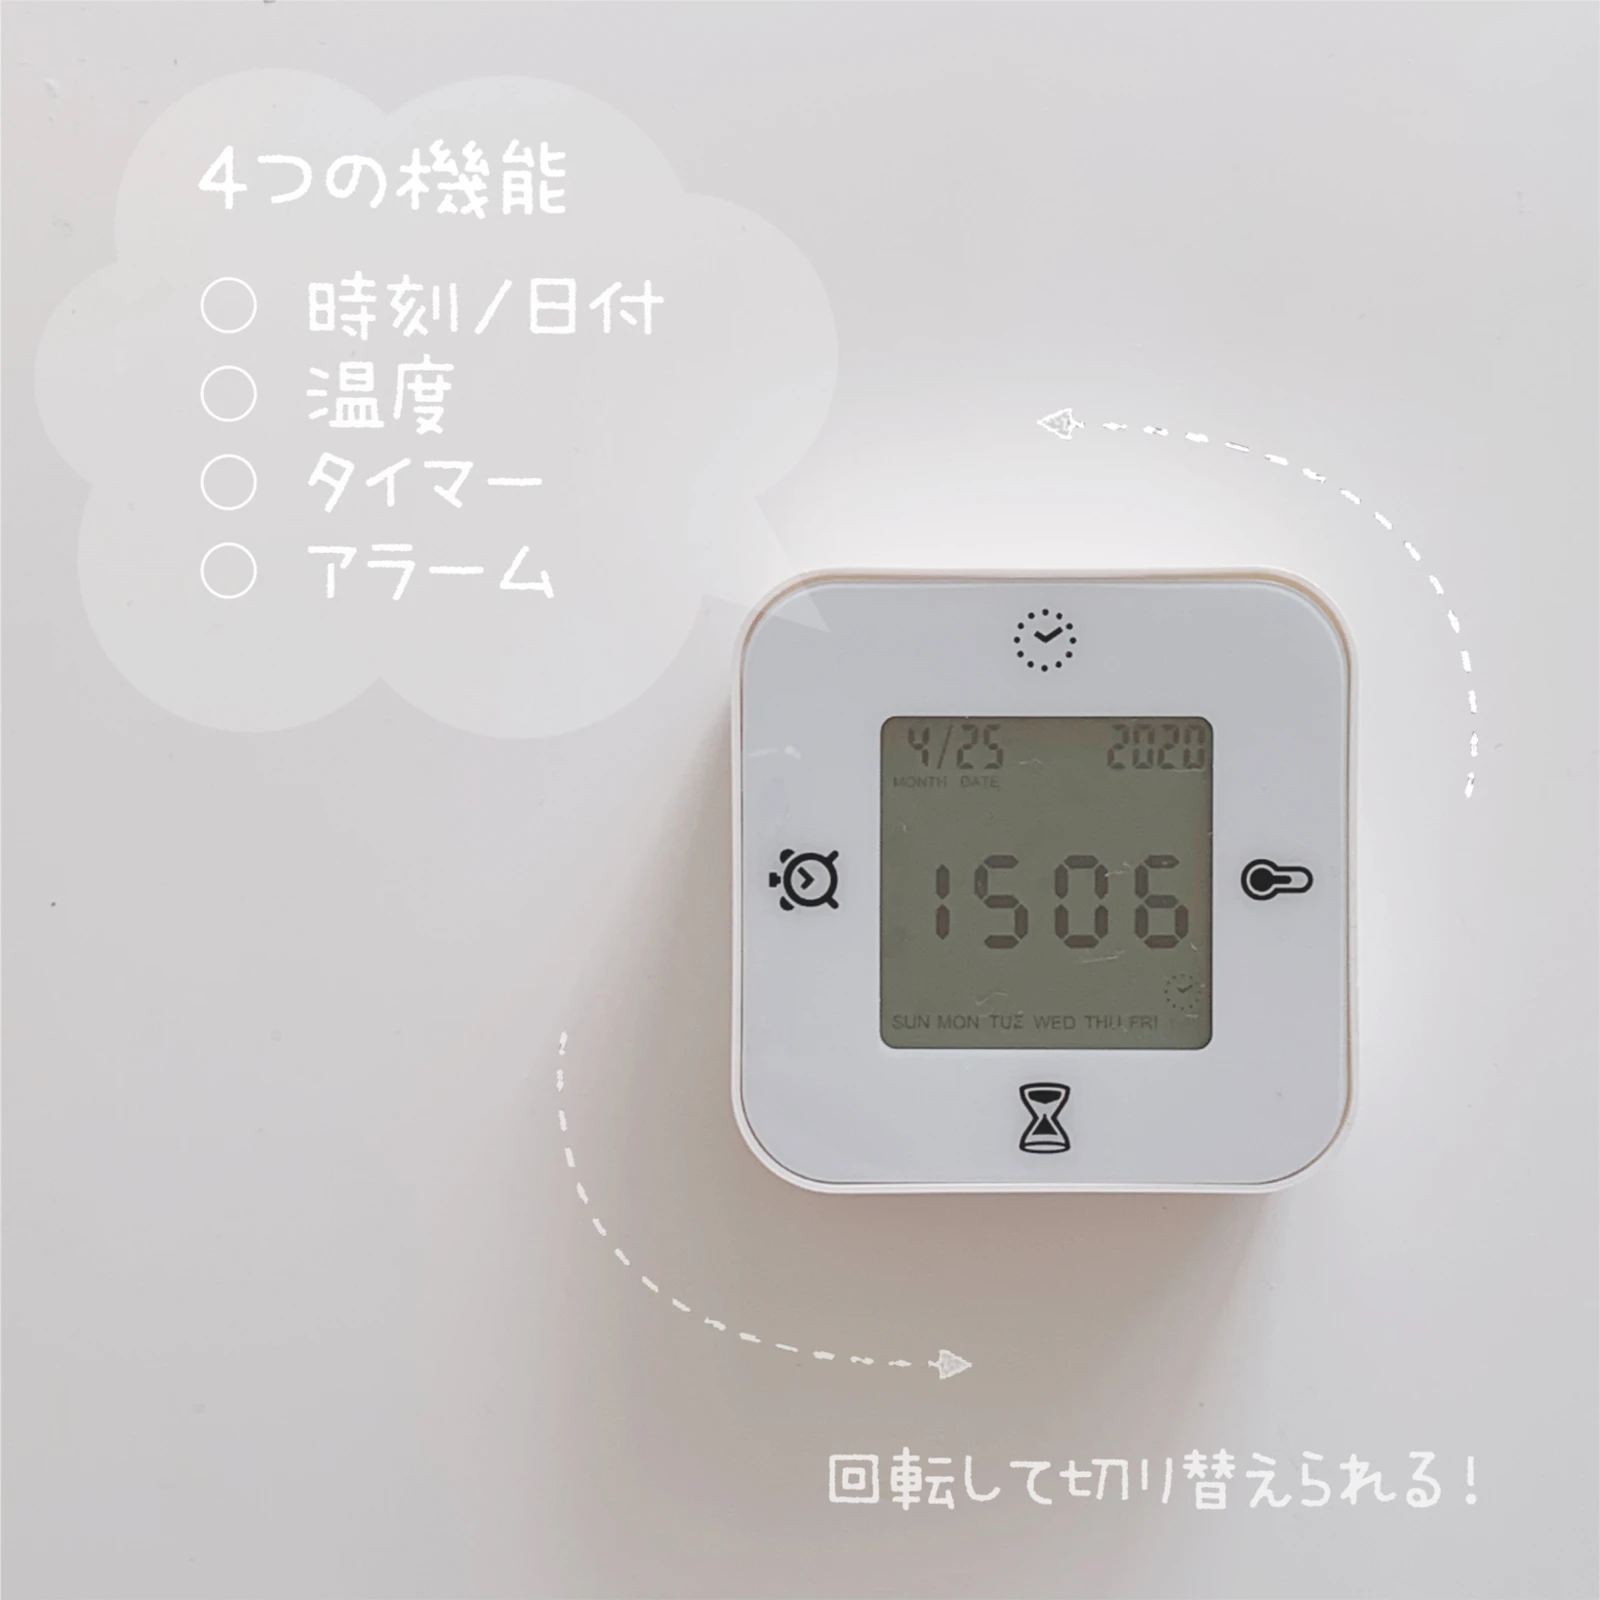 Ikea 温度計やタイマー機能もあるコスパ最高な時計 ほわいと が投稿したフォトブック Lemon8